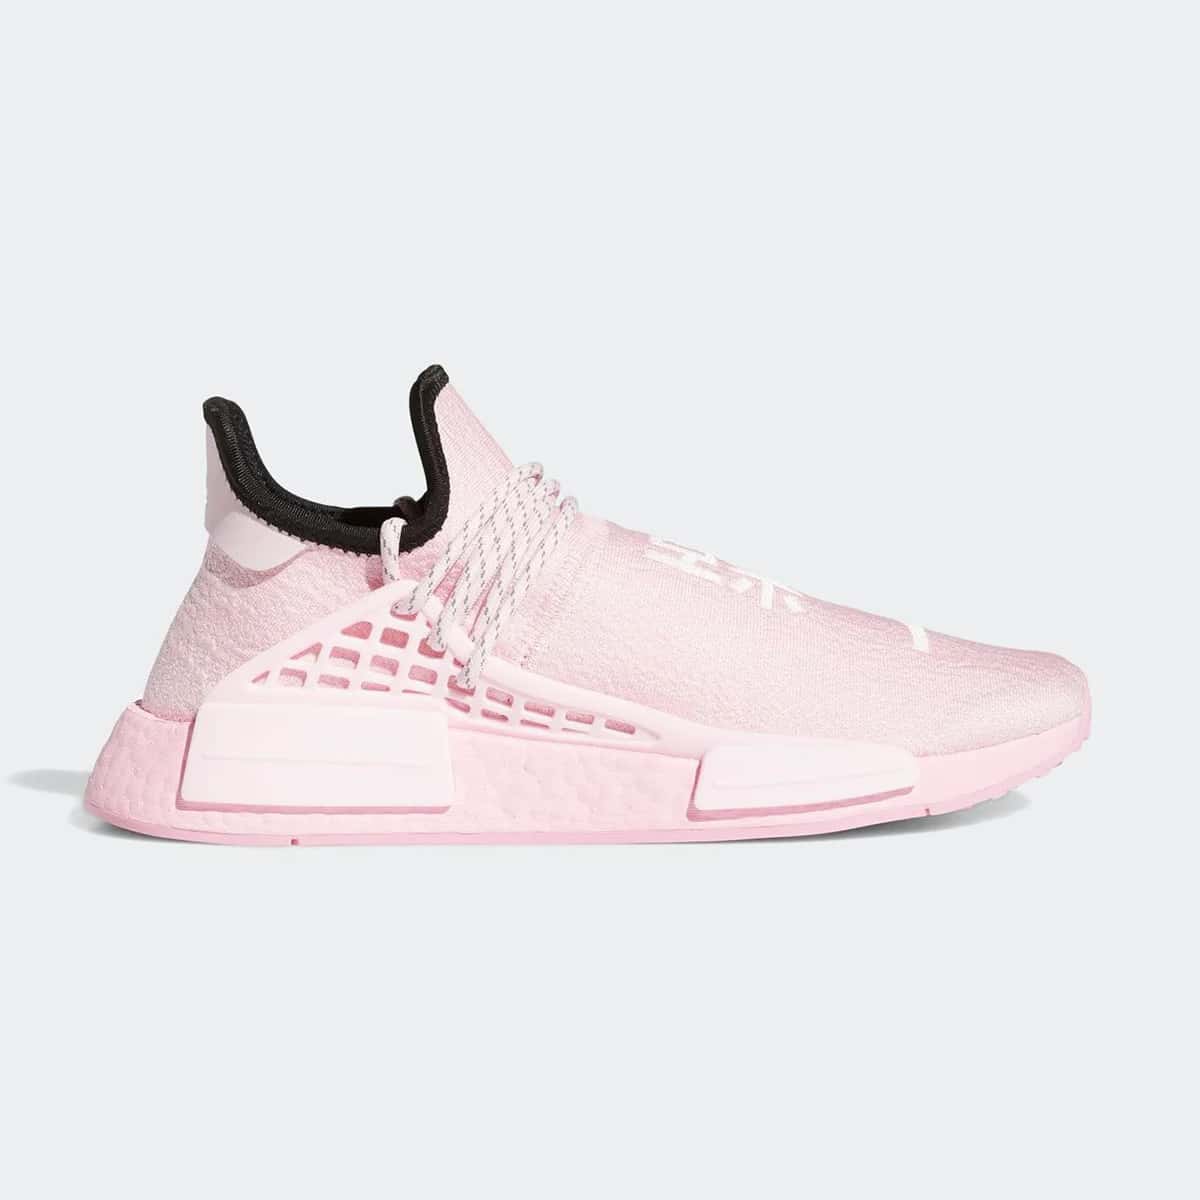 퍼렐 윌리암스 x 아디다스 NMD HU 트리플 핑크(Pharrell Williams x adidas Originals NMD HU Triple Pink)-GY0088